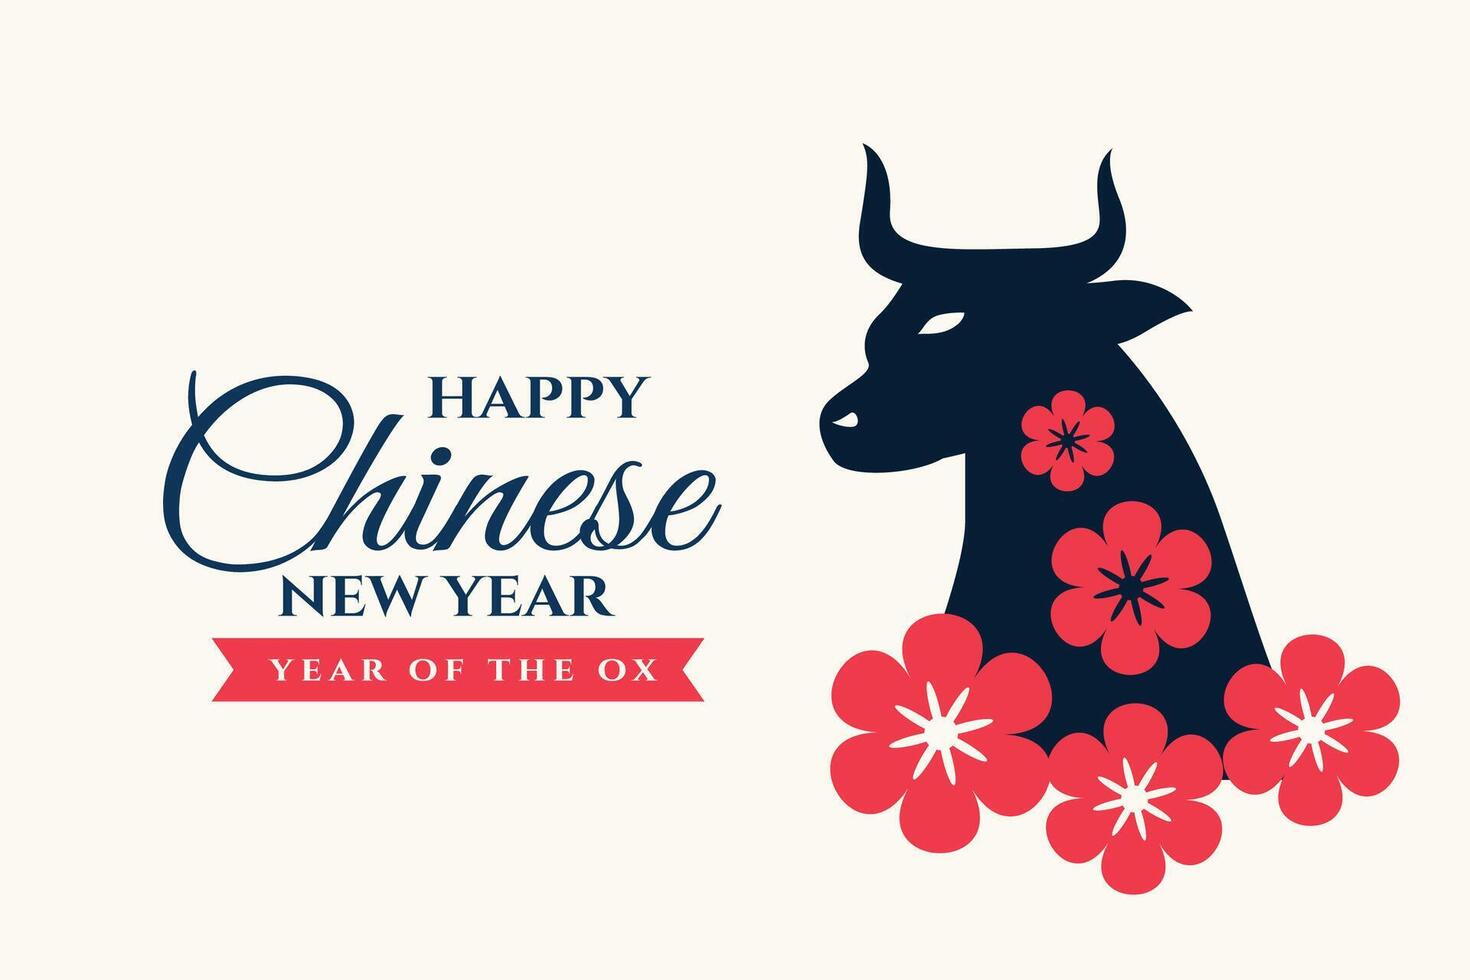 contento chino nuevo año de el buey floral saludo vector